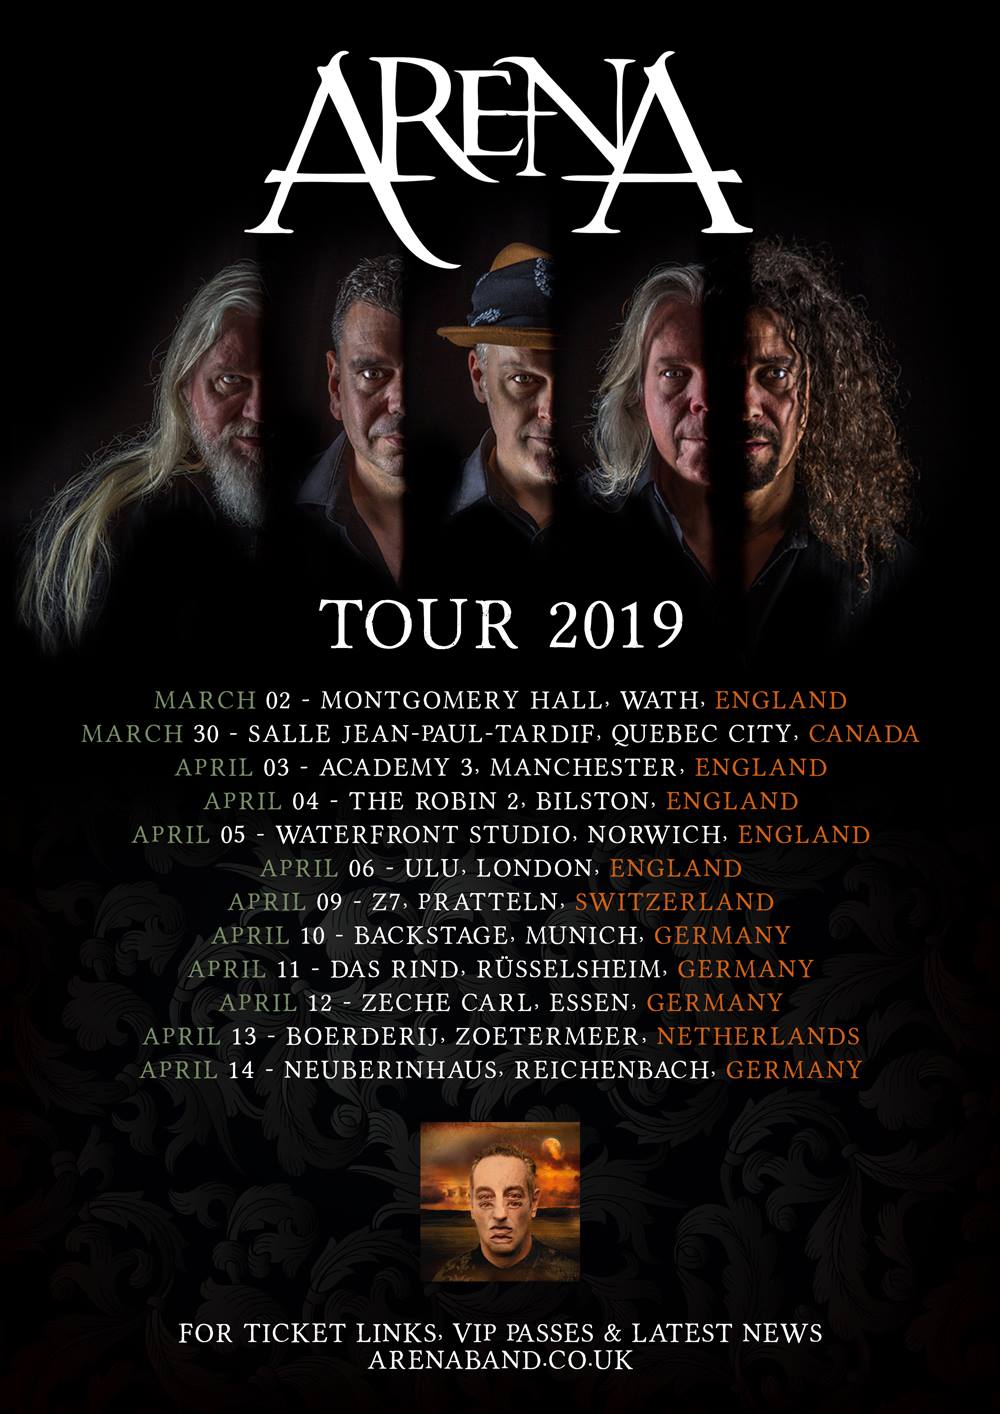 Arena tour 2019